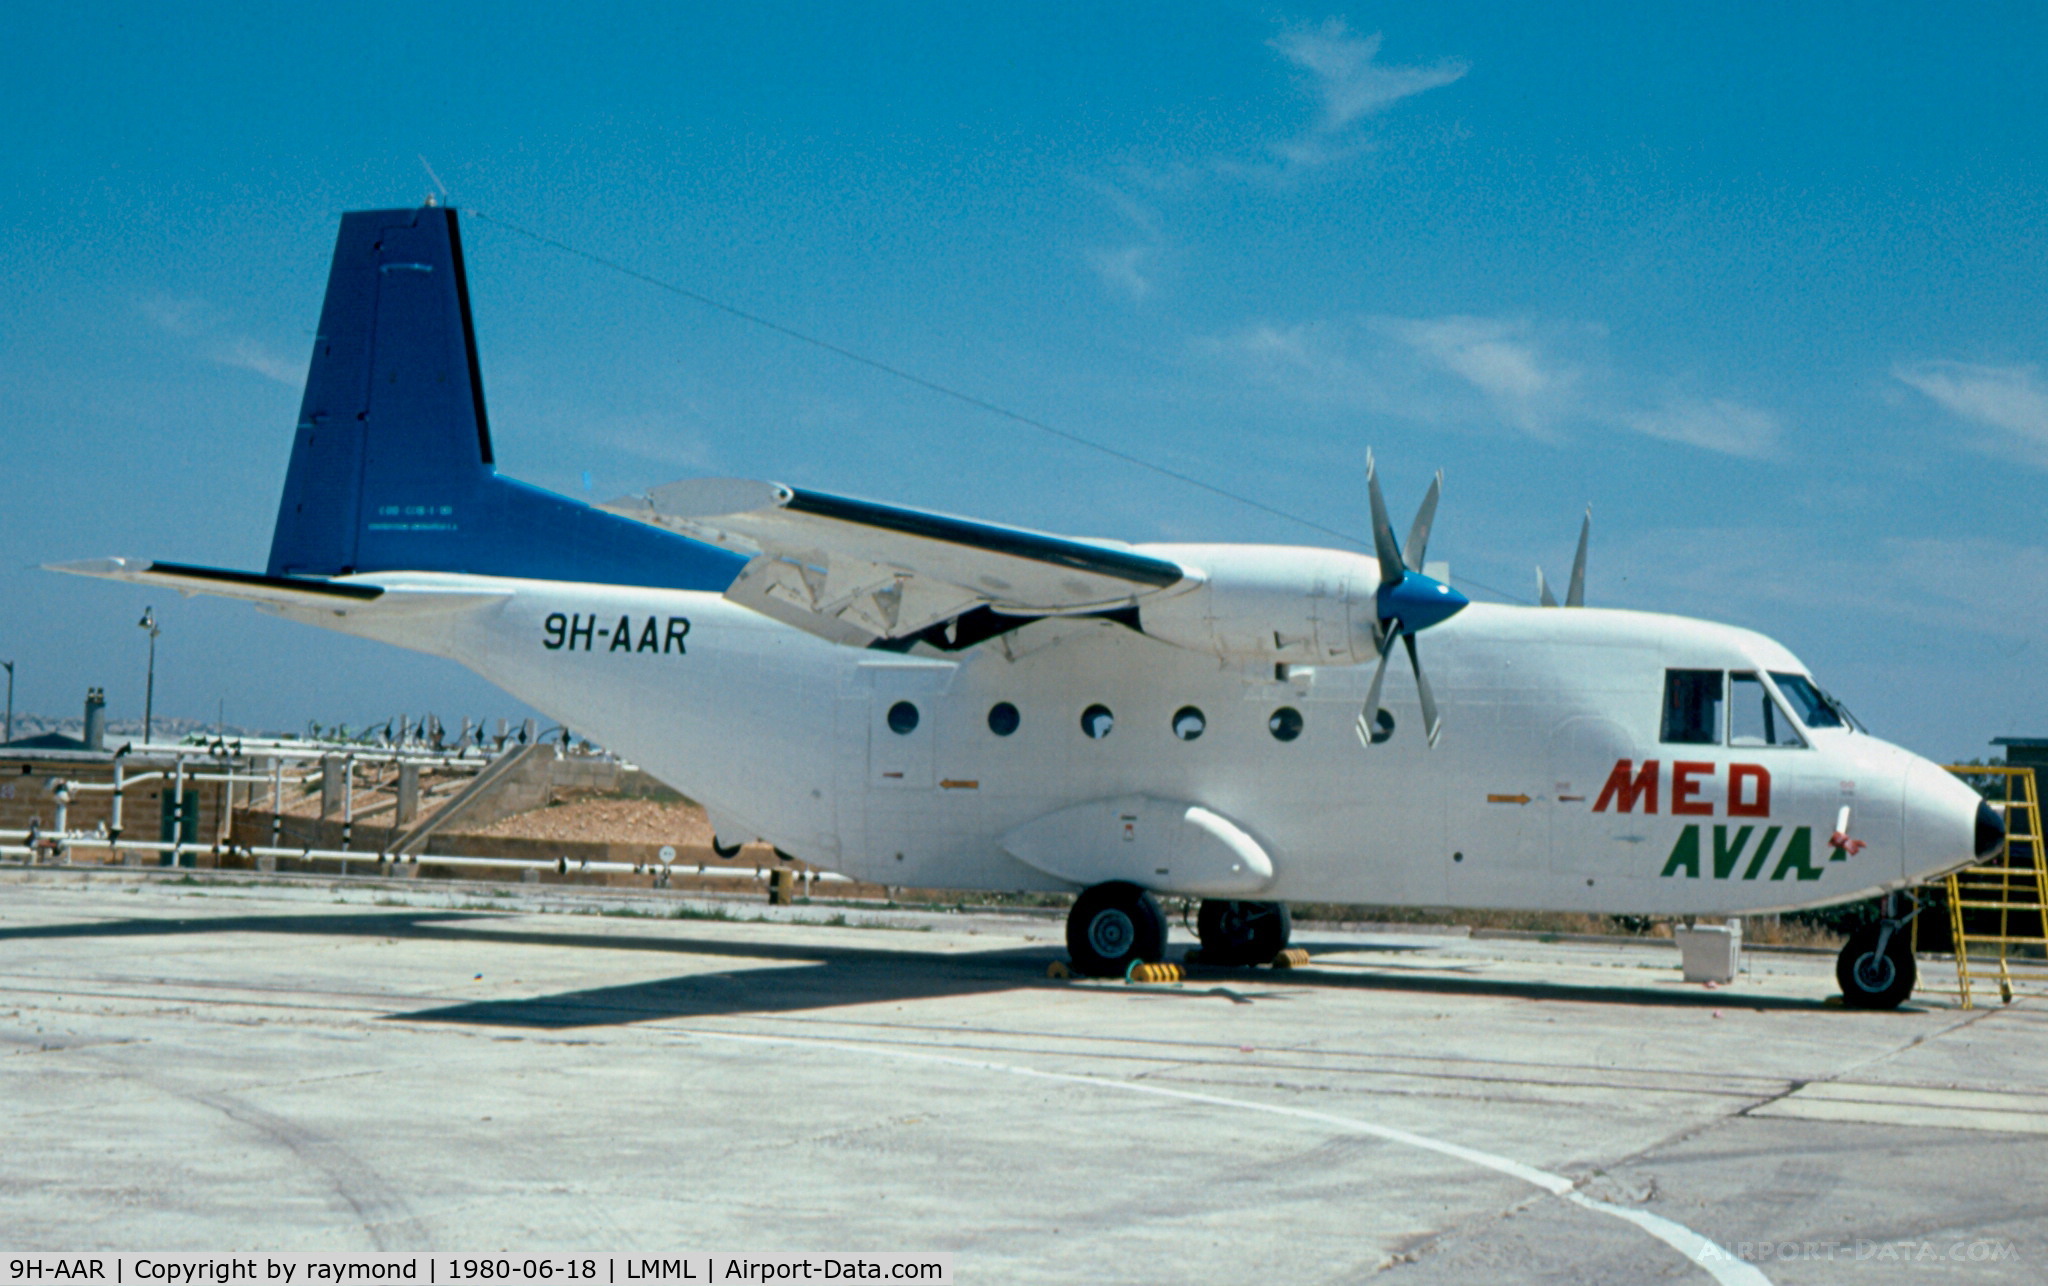 9H-AAR, 1980 CASA C-212-200 Aviocar C/N 161, Casa212 9H-AAR Medavia